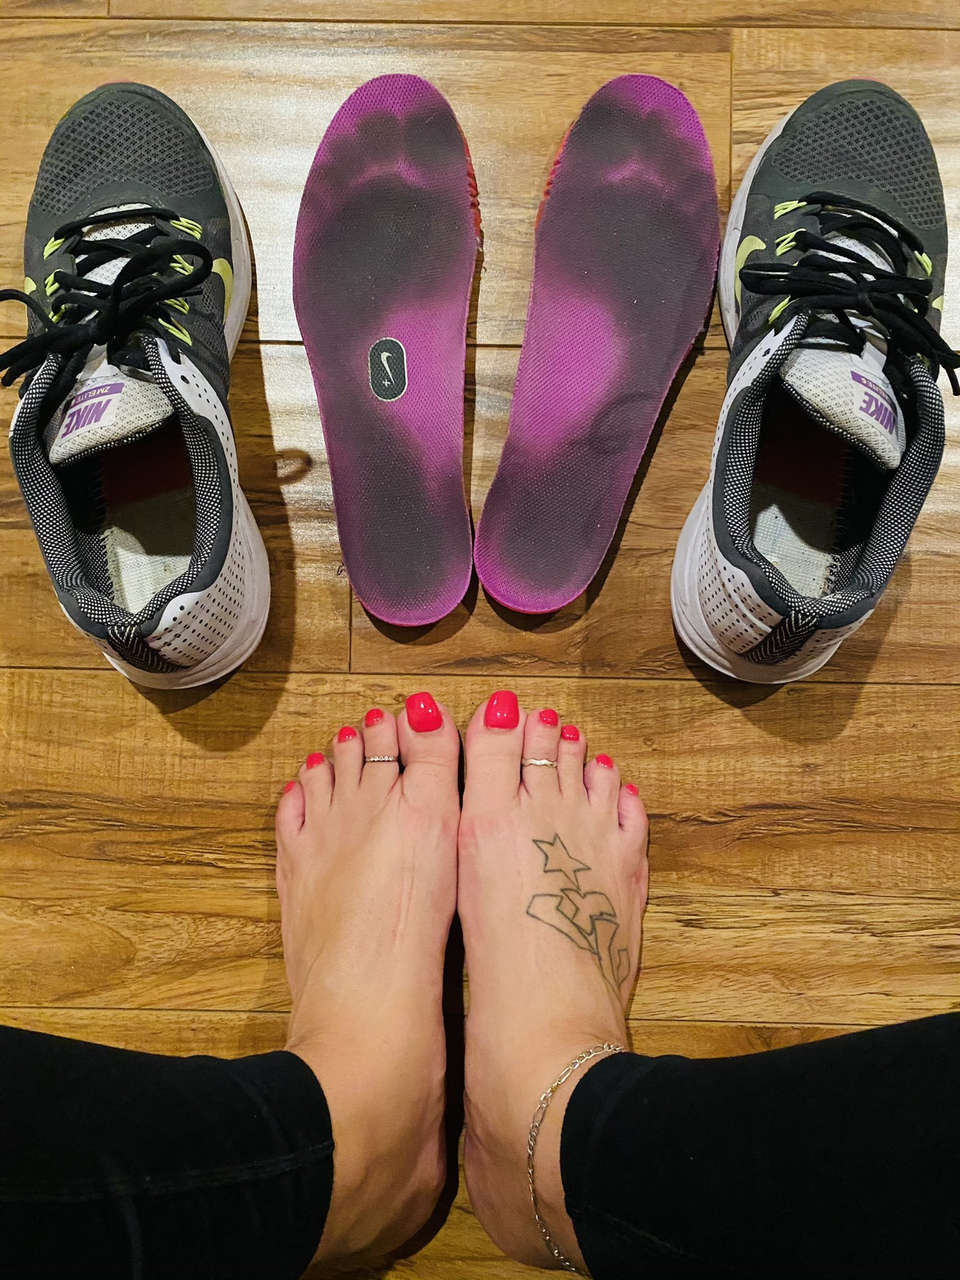 Tori Danyels Feet